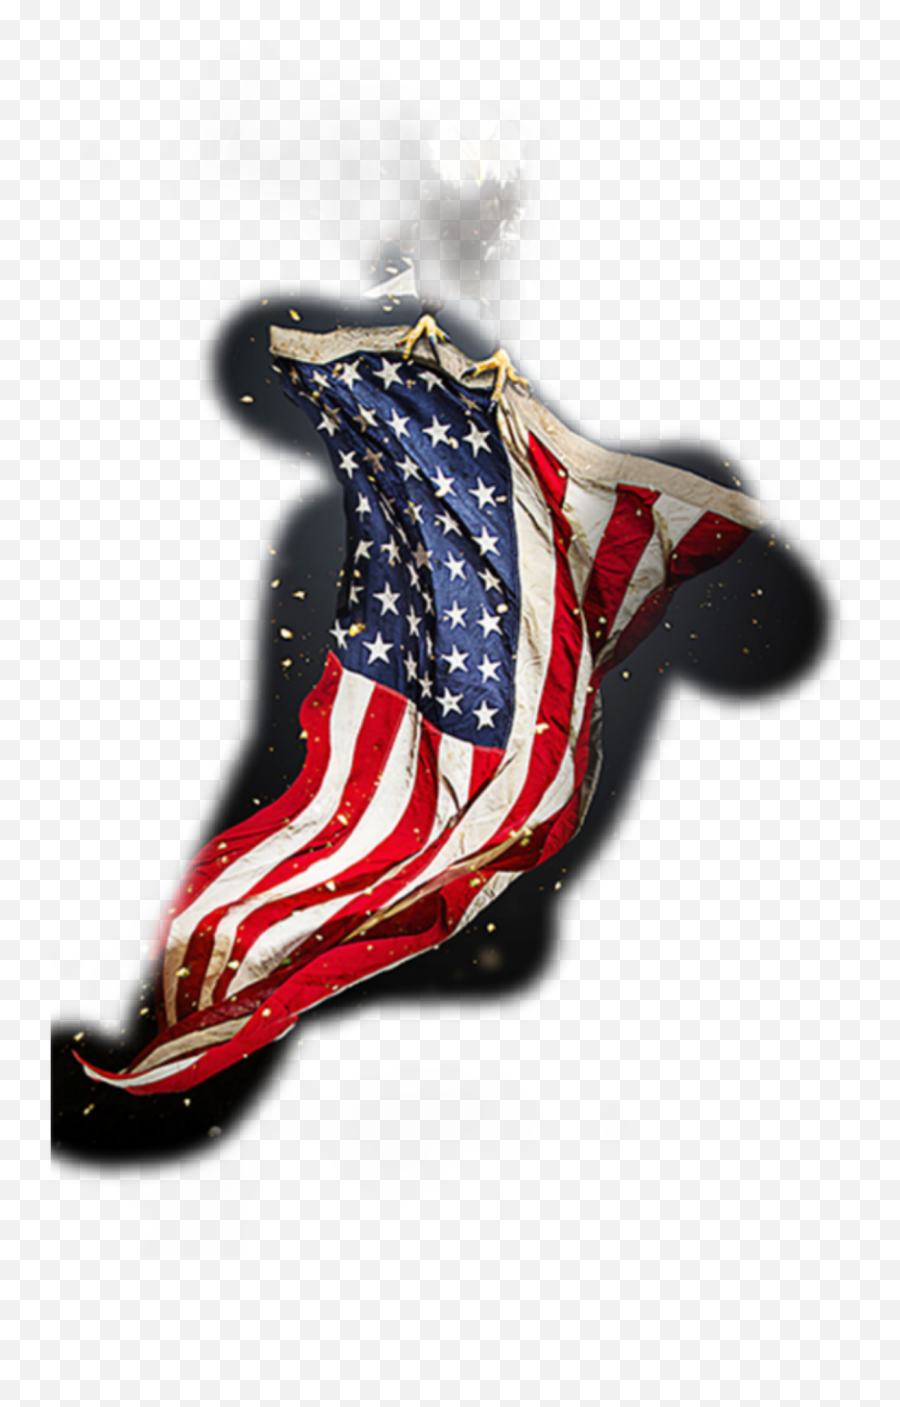 Flag Sticker By Nicholas Maliko - Flag Day Emoji,American Flag Made Out Of Emojis